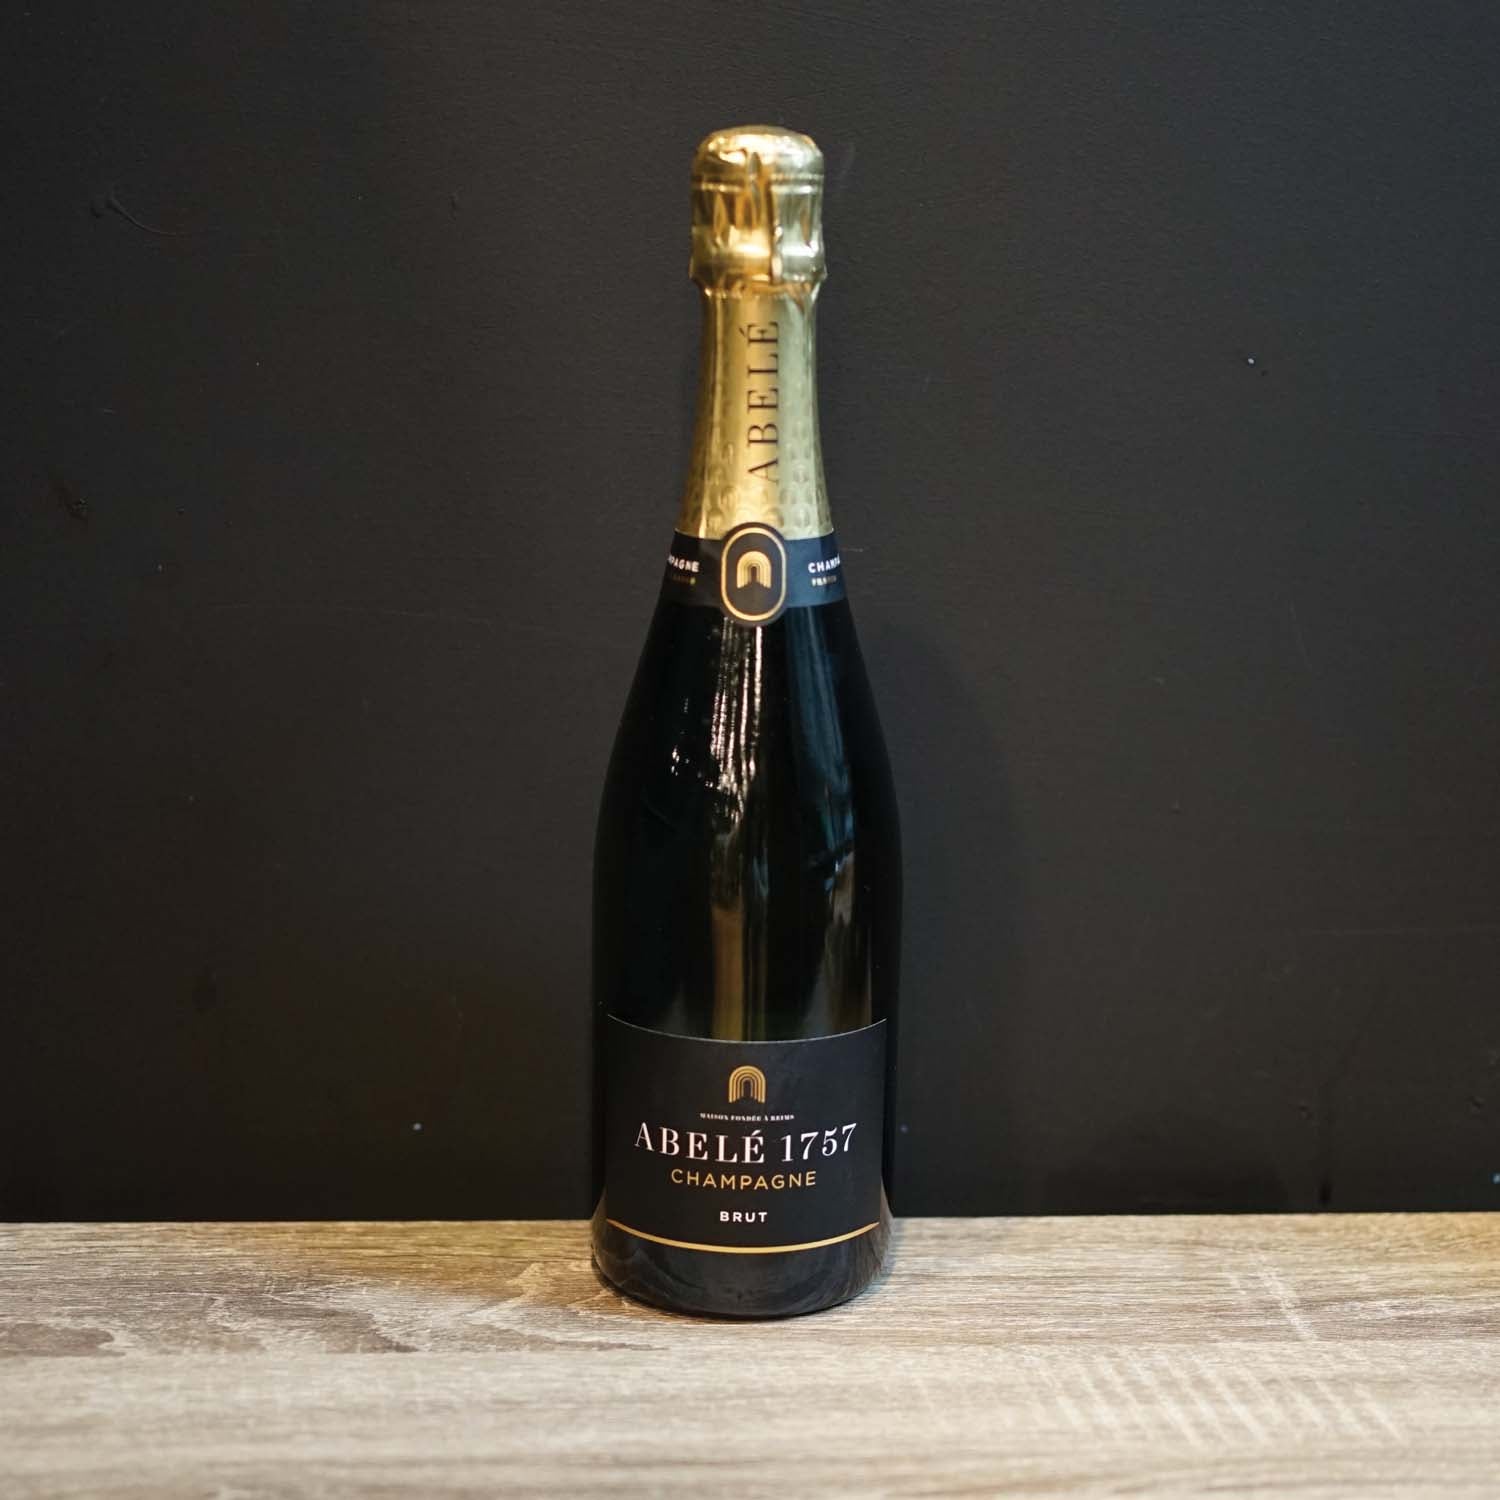 Abele 1757 Champagne Brut NV